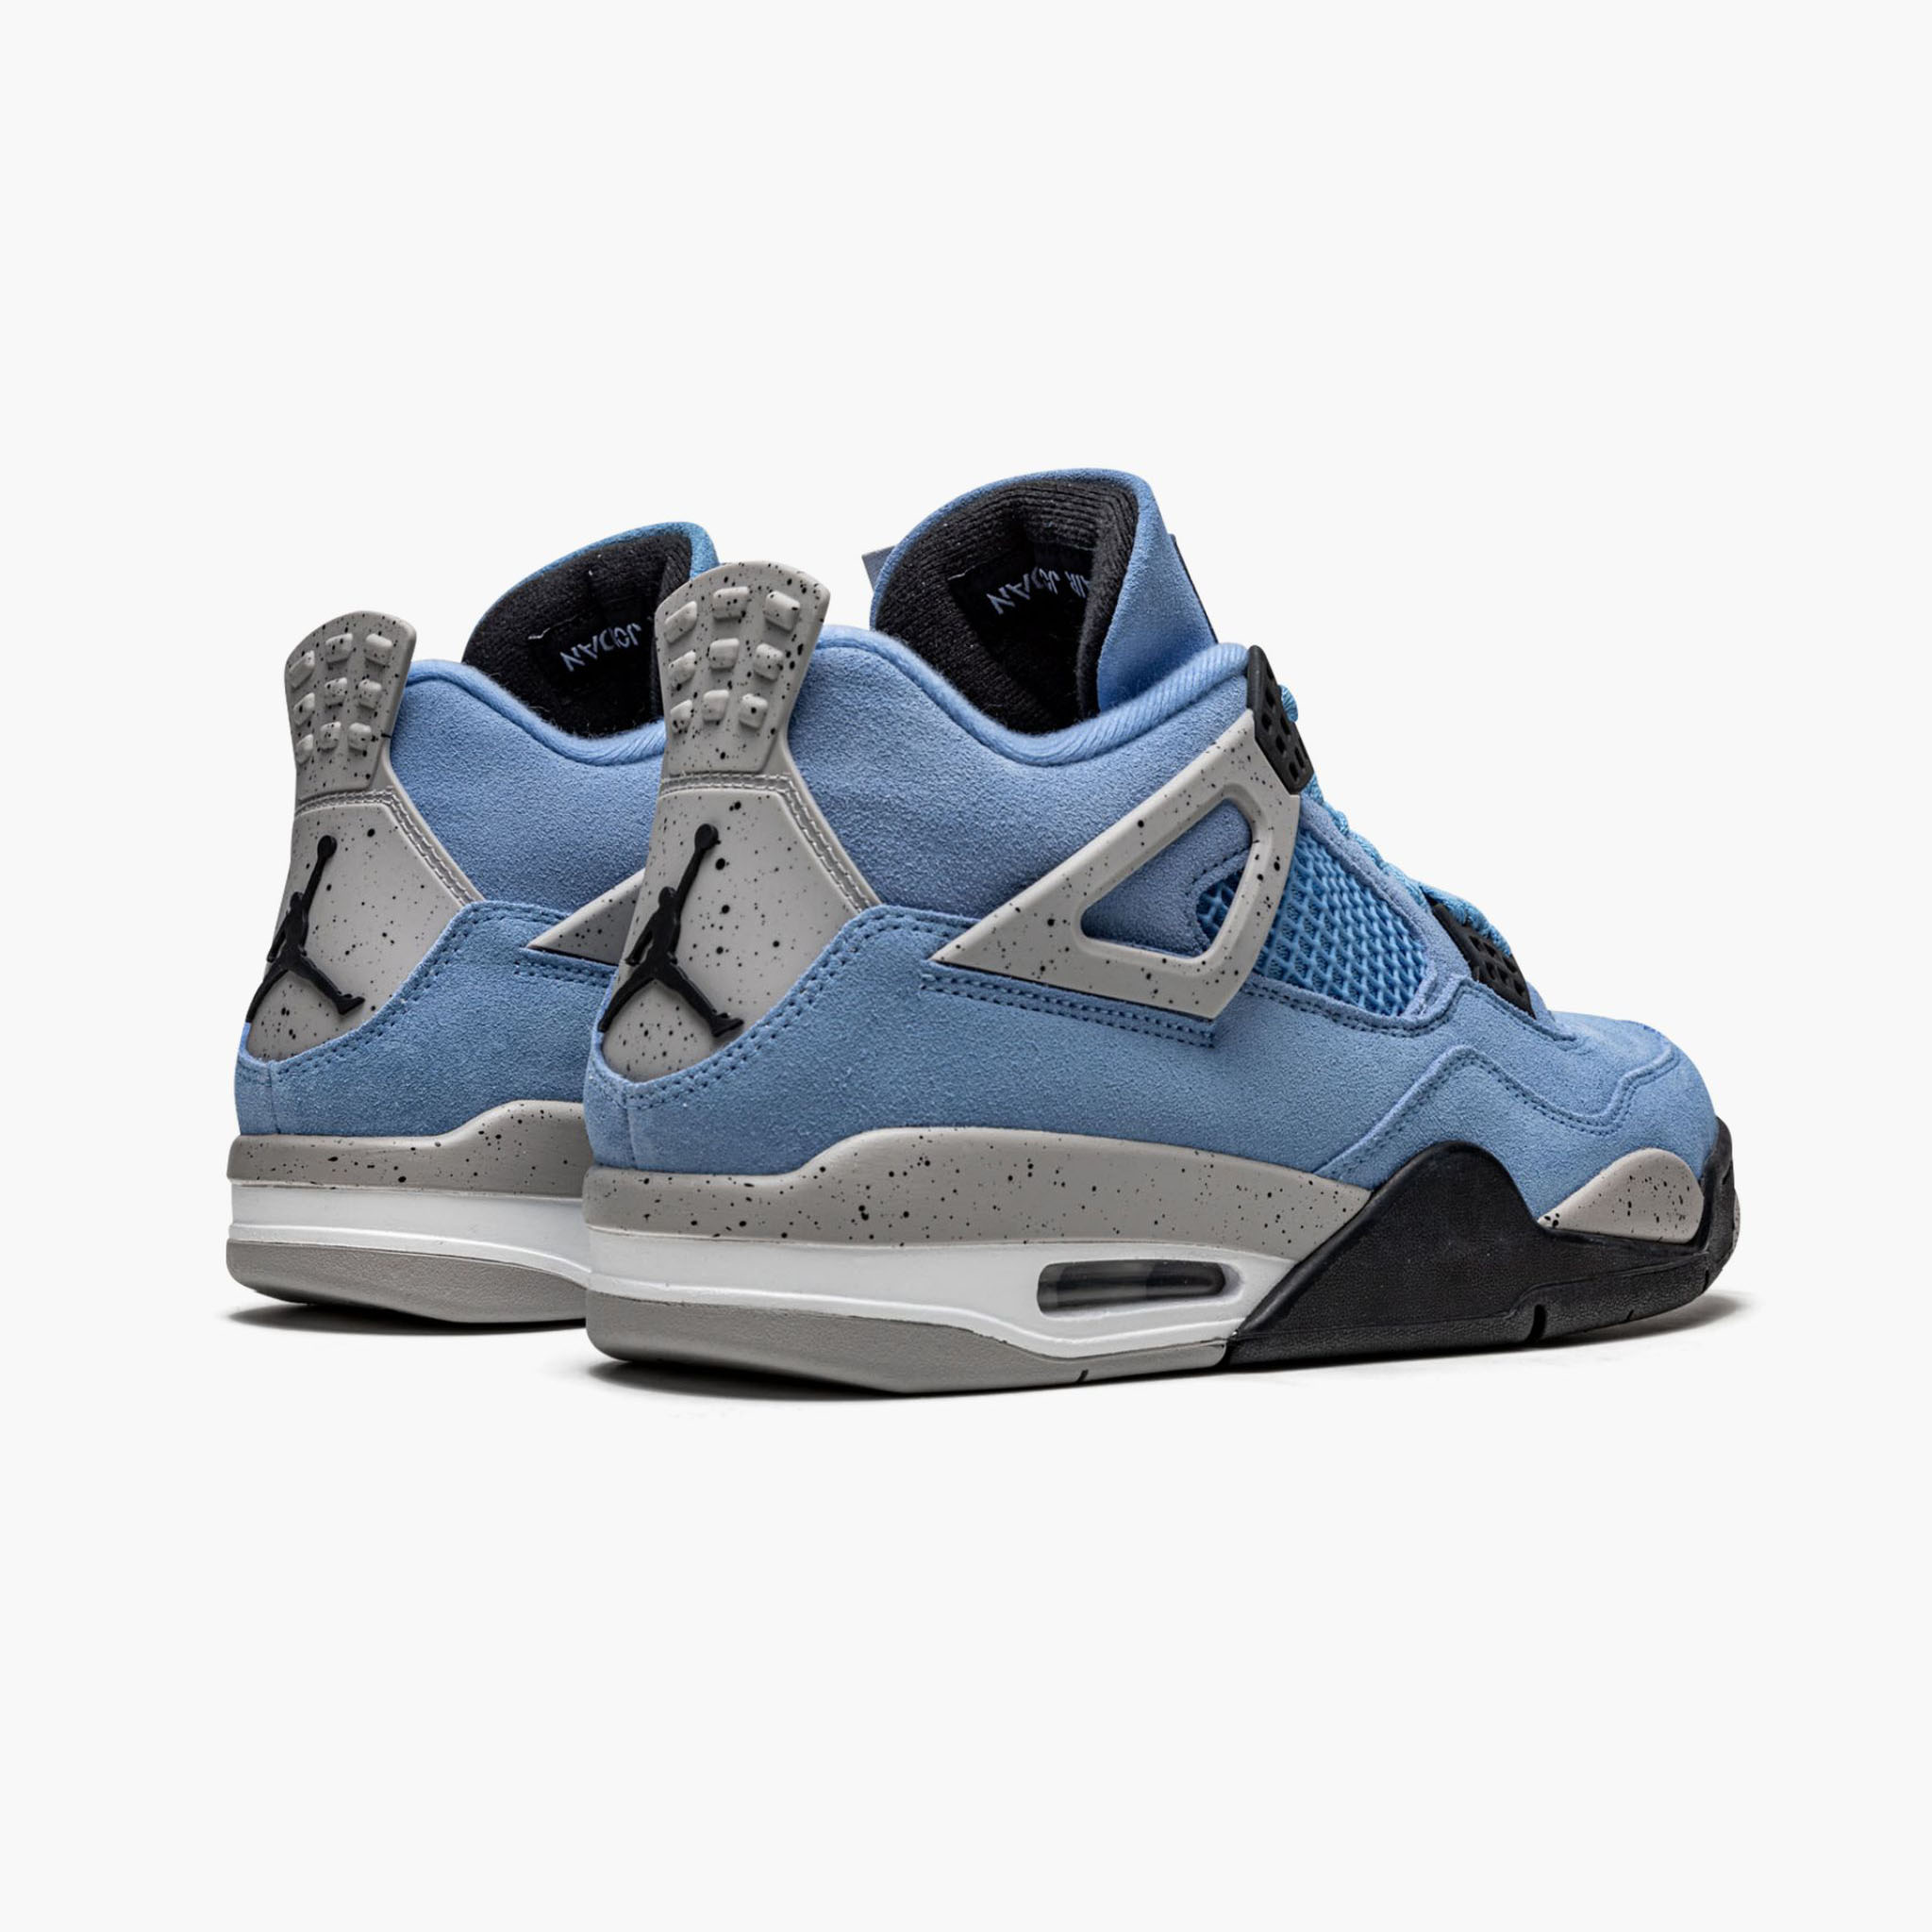 Where to Buy the Air Jordan 4 'University Blue' - Sneaker Freaker